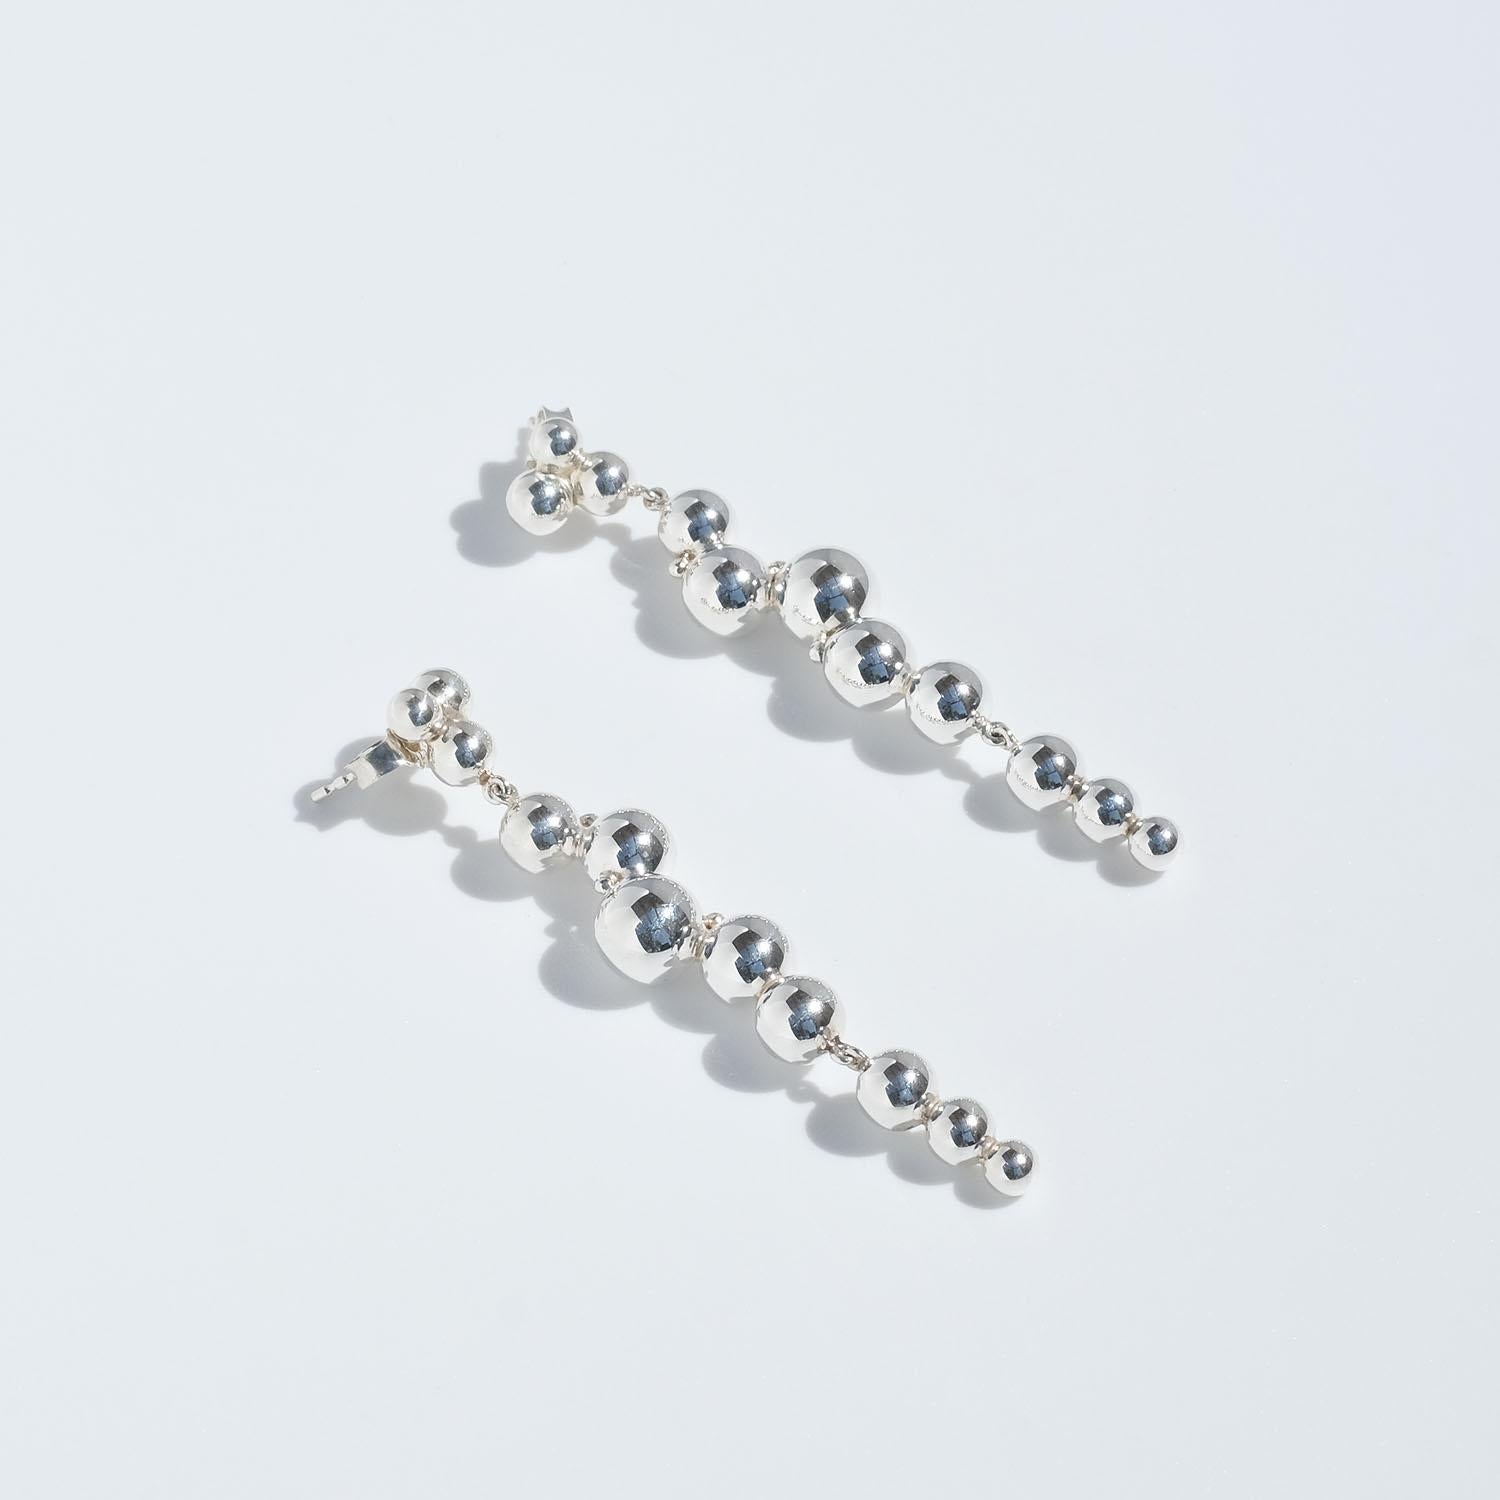 Silver Earrings by Georg Jensen, Moon Light Grapes 2